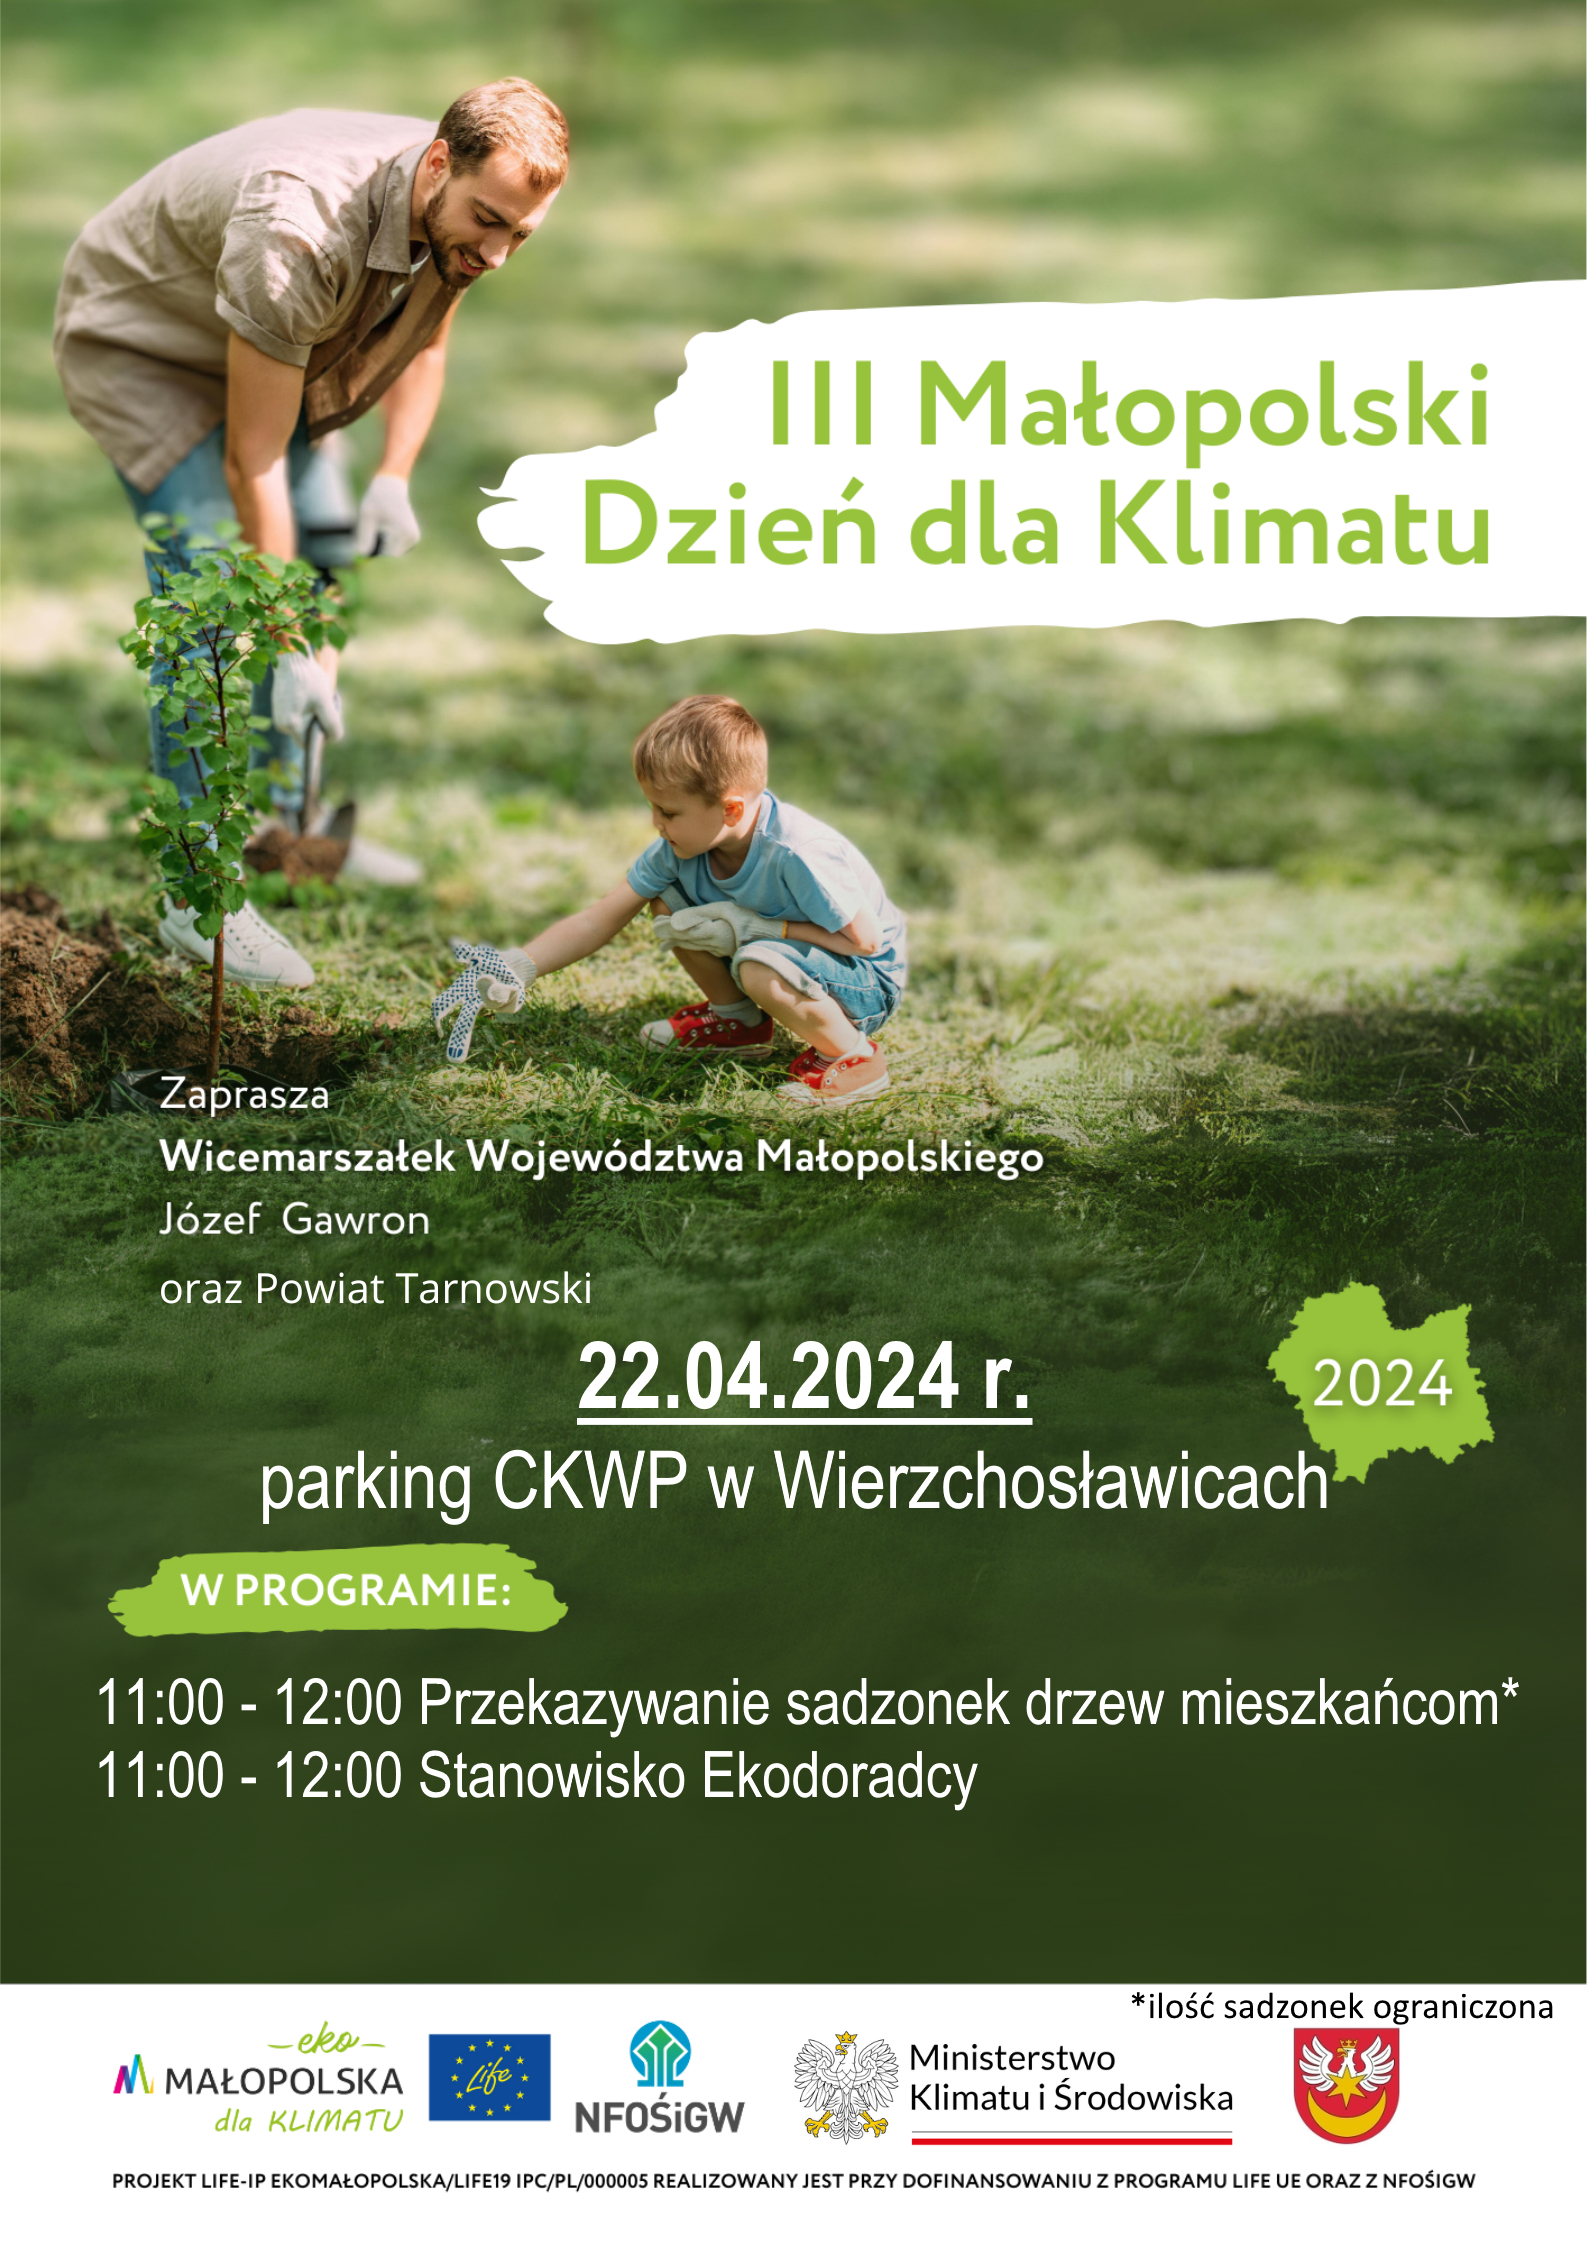 Plakat promujący III Małopolski Dzień dla Klimatu w Wierzchosławicach. Na plakacie widać mężczyznę oraz chłopca, którzy razem sadzą drzewo.